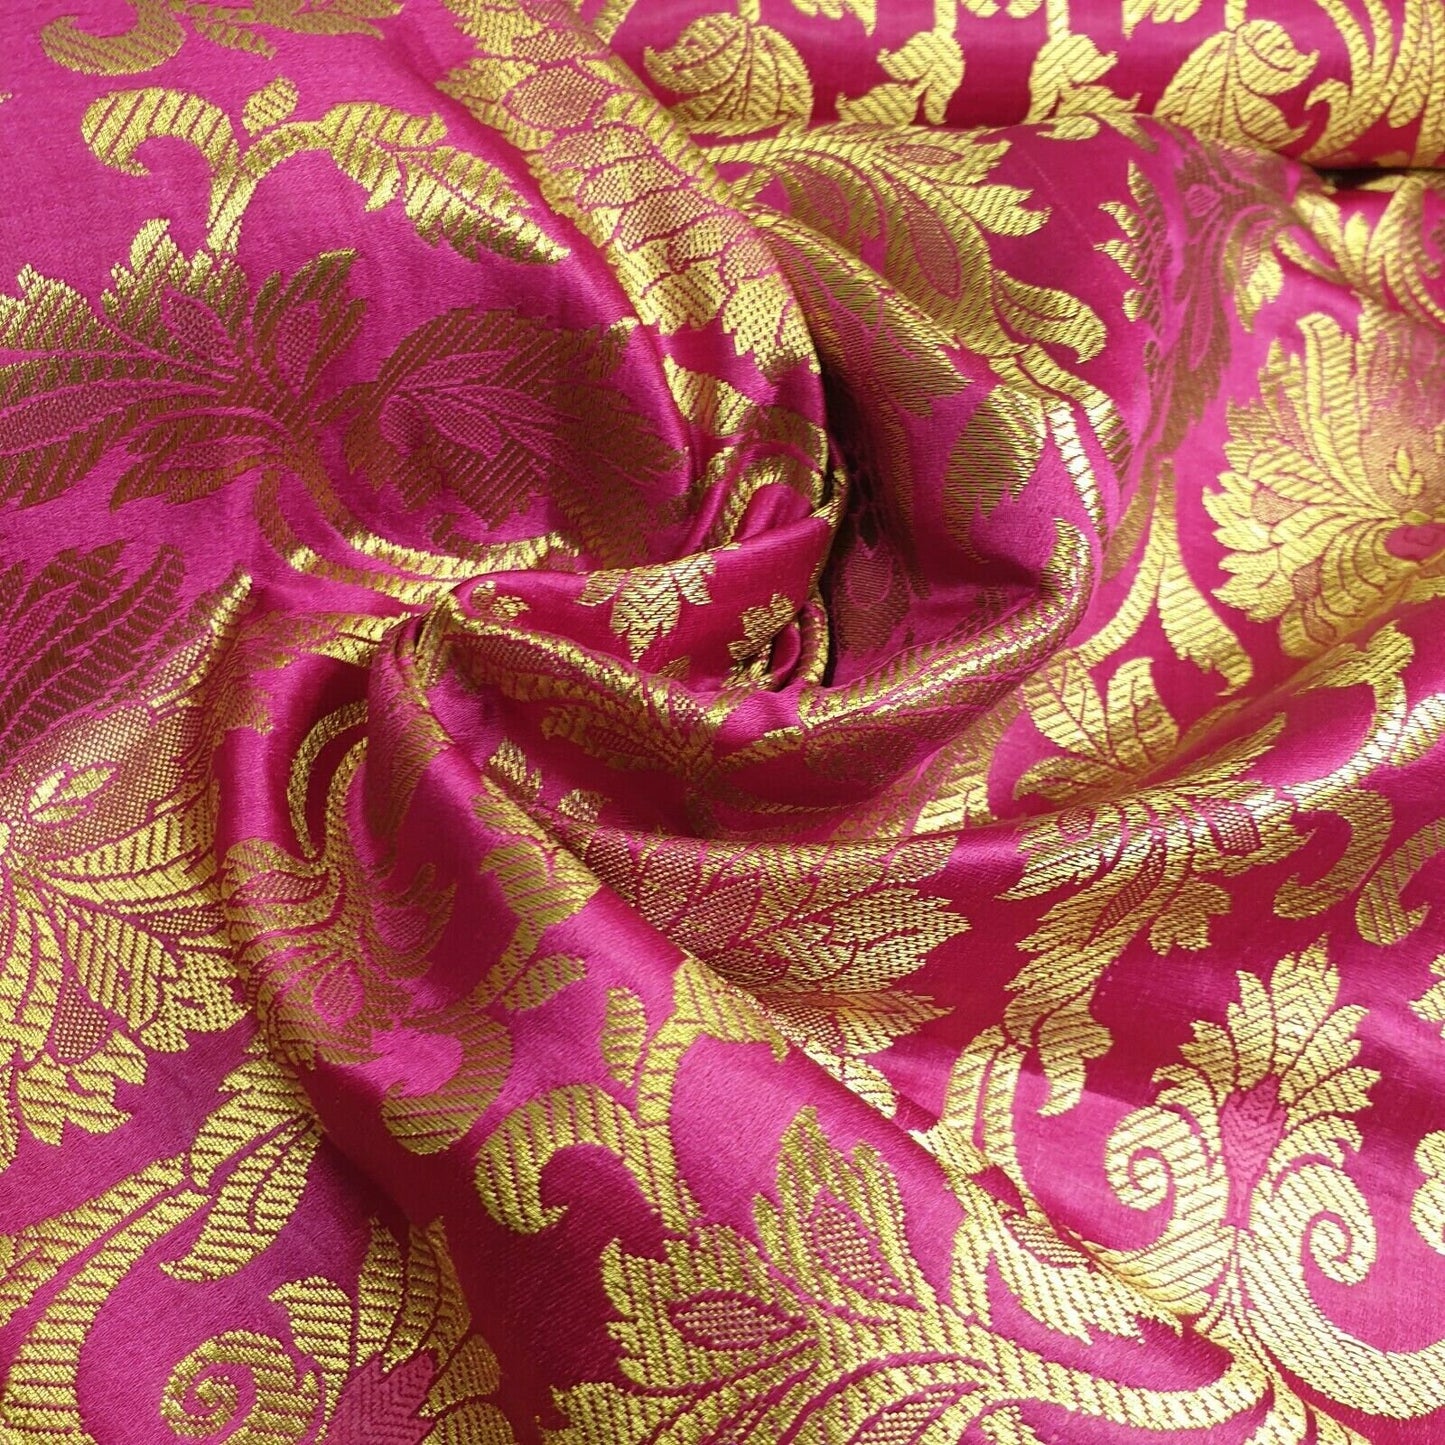 Ornamental Floral Gold Metallic Print Indian Banarasi Brocade Dress Fabric D 44"